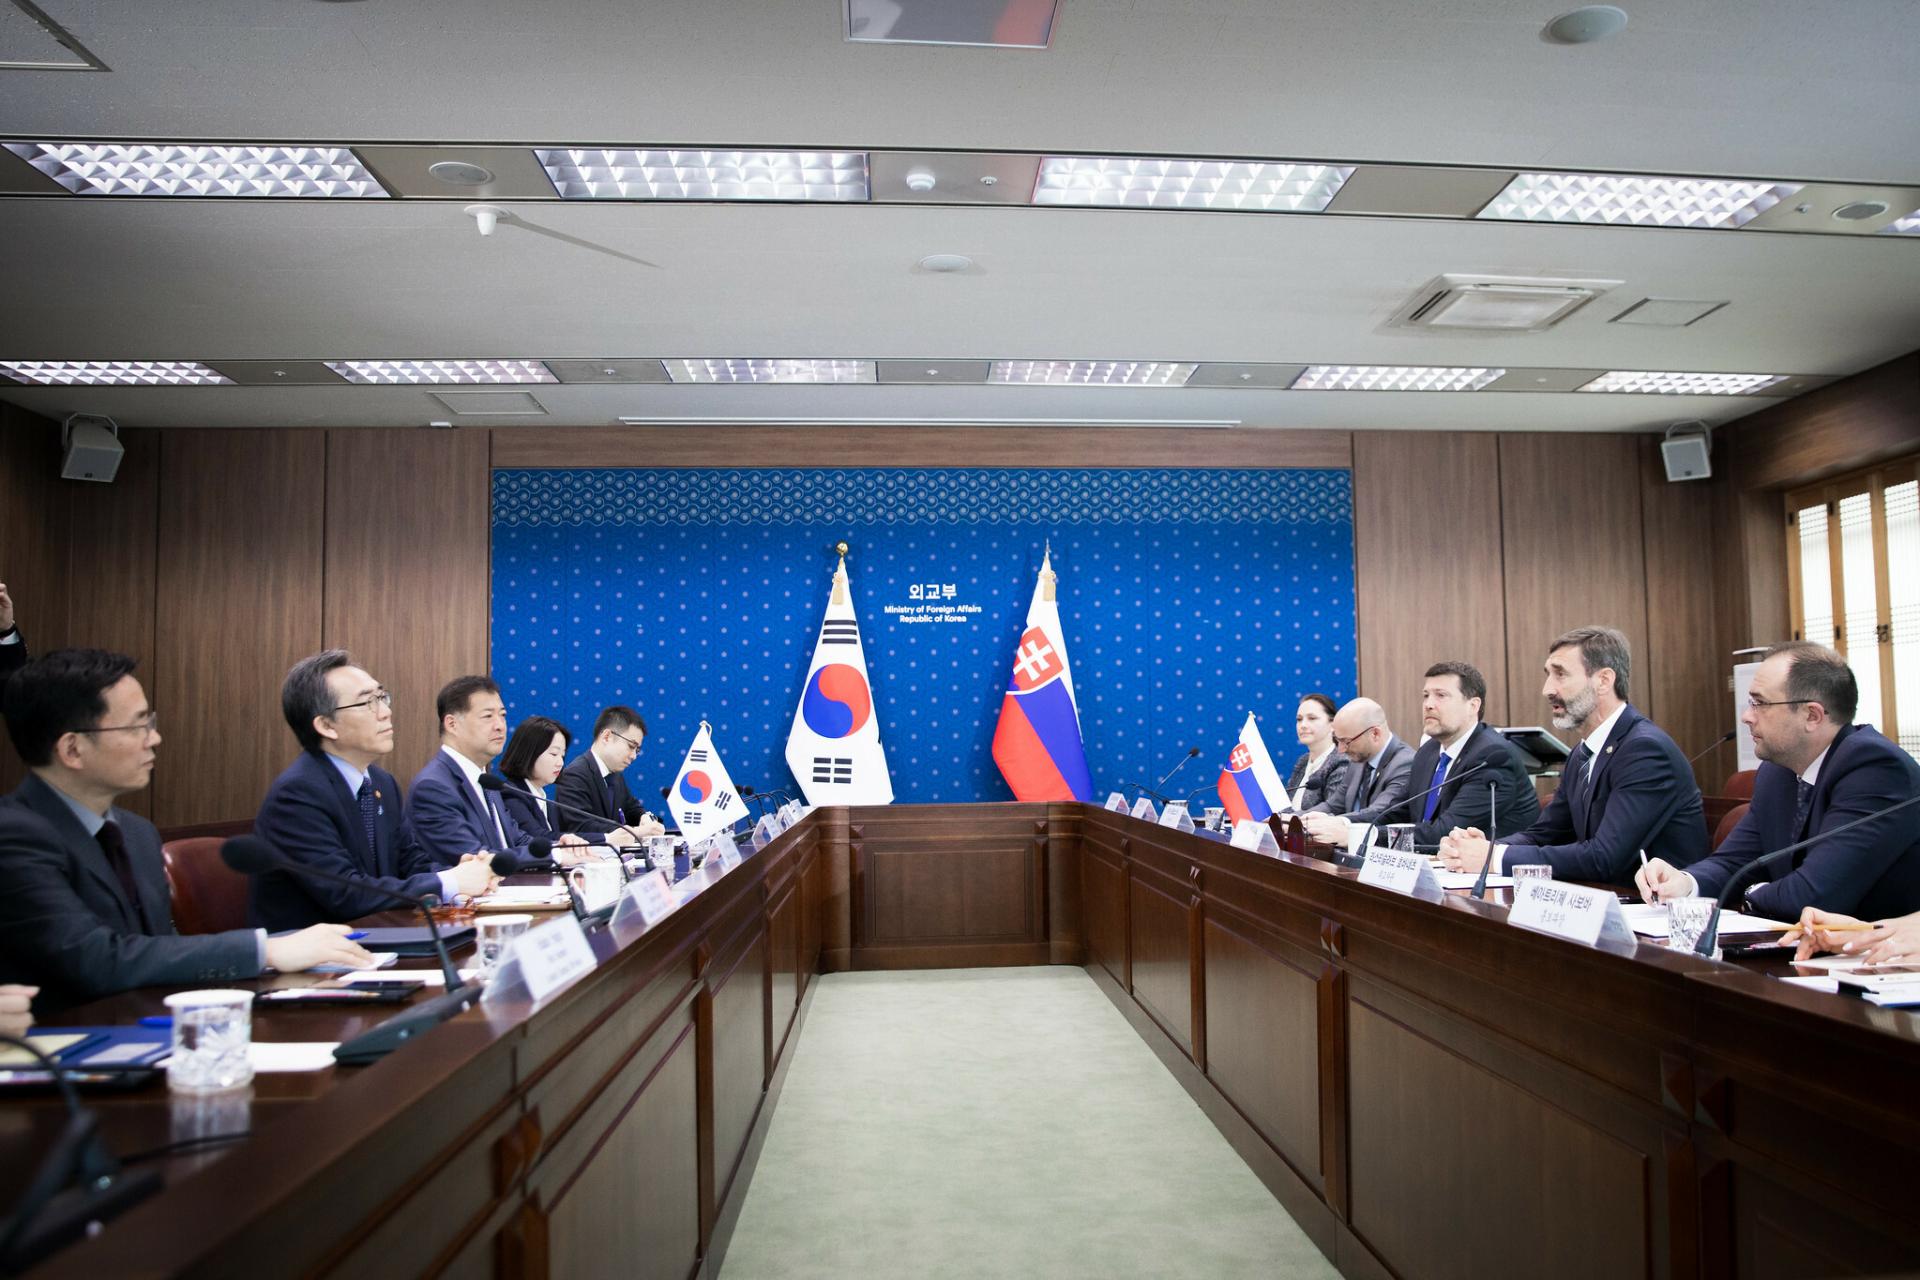 Slovensko a Južná Kórea chcú povýšiť vzájomné vzťahy na strategické partnerstvo